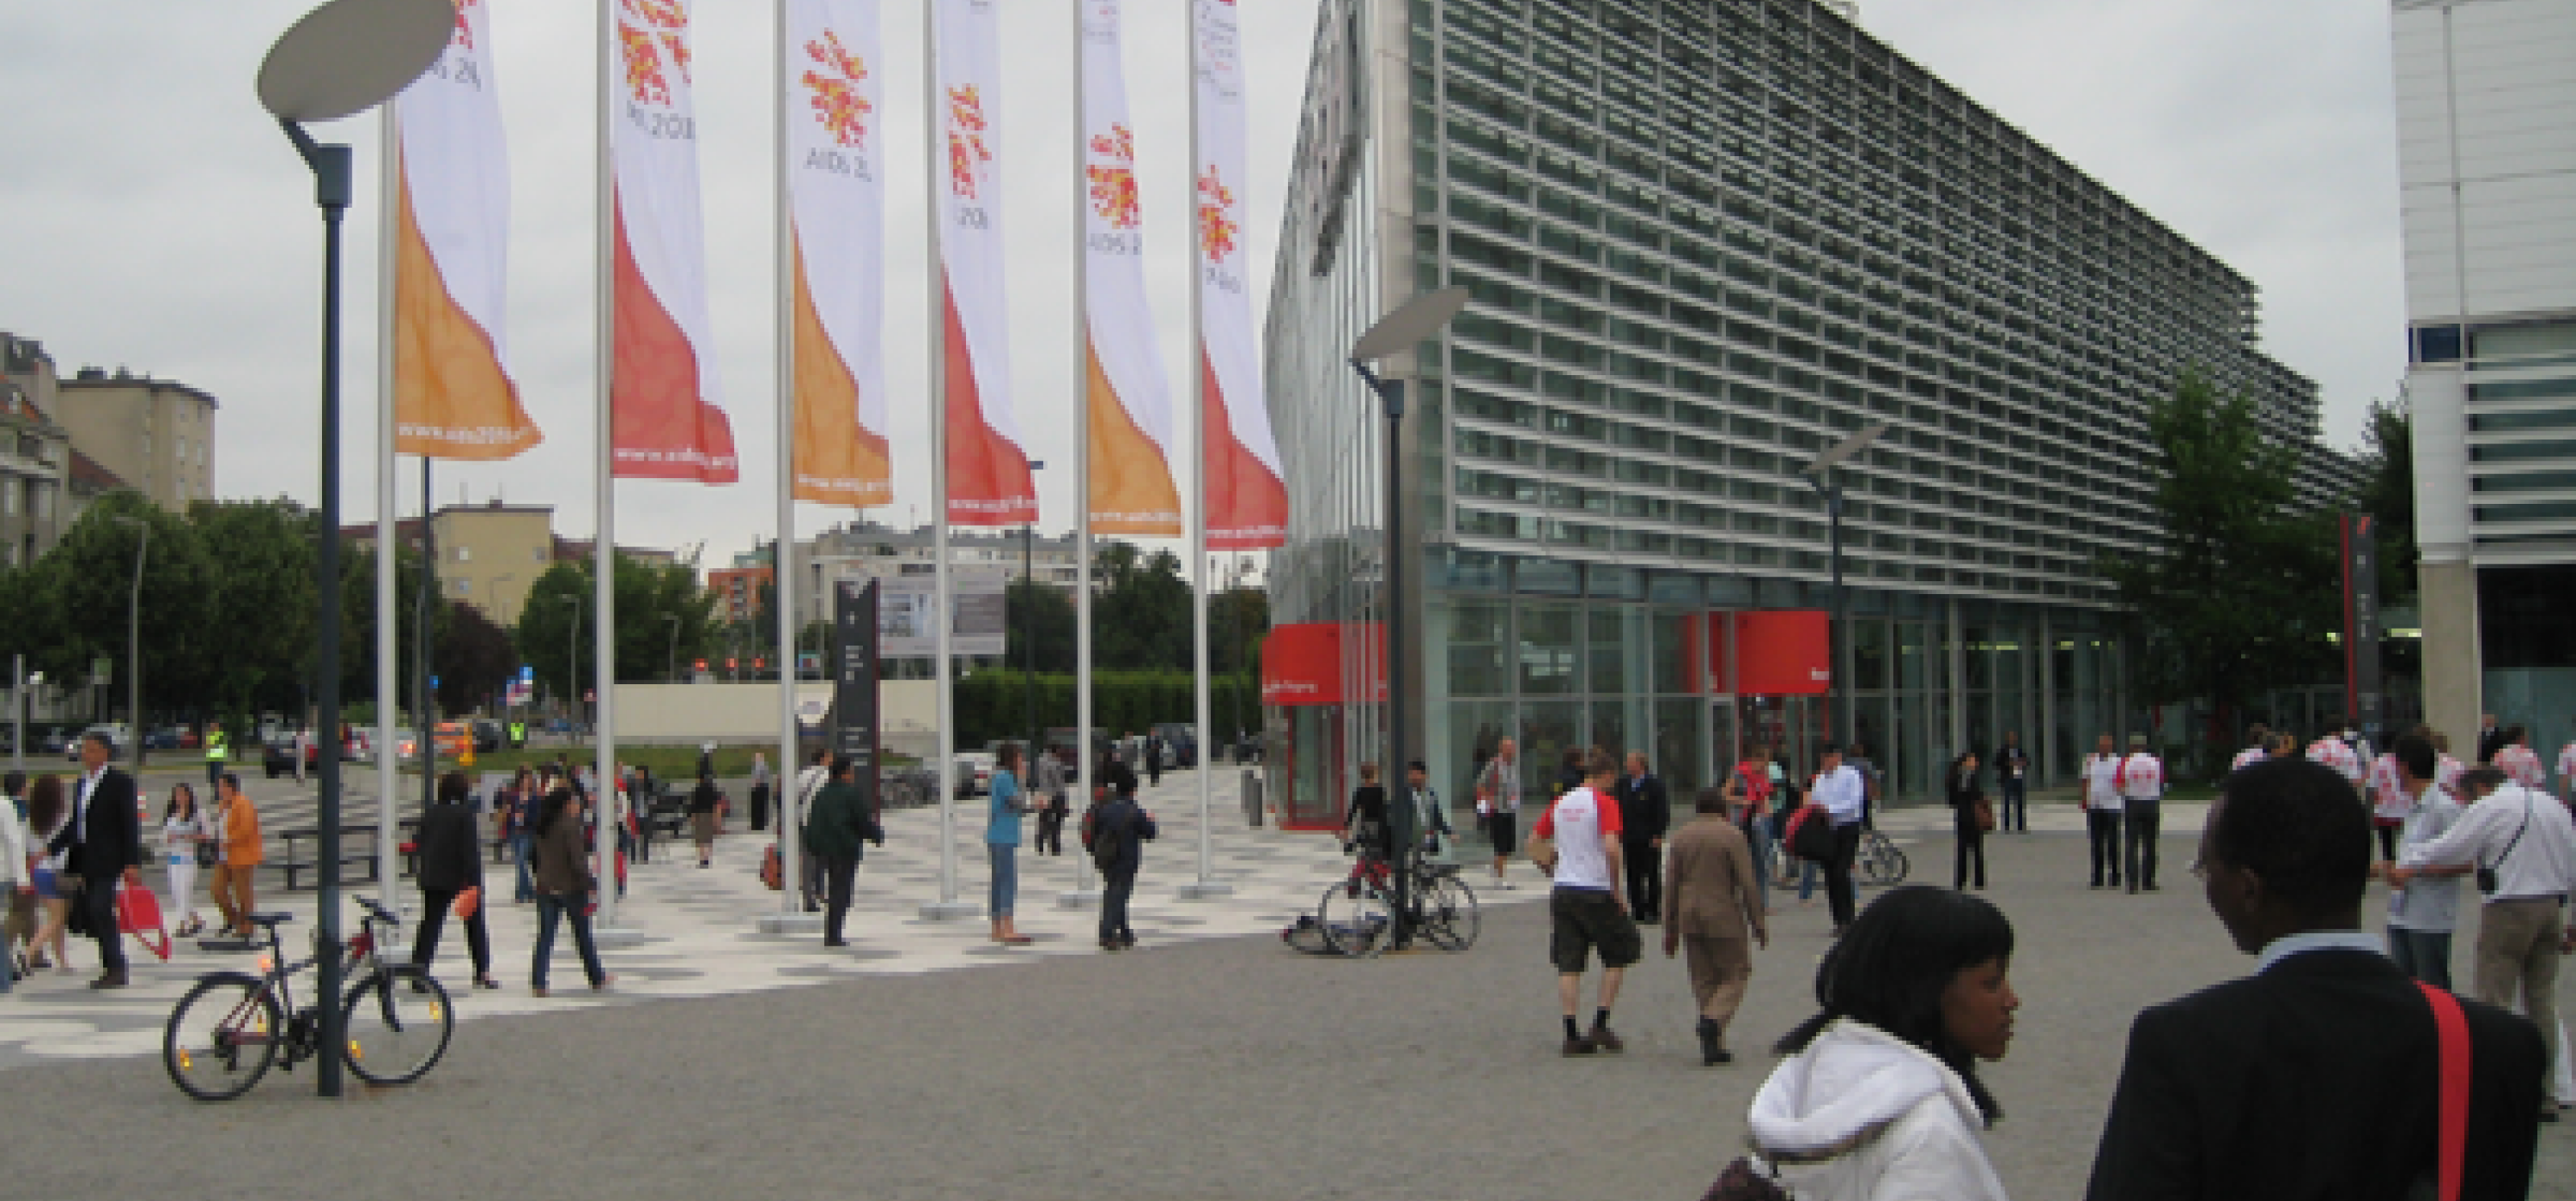 Eingang zur AIDS-Konferenz in Wien